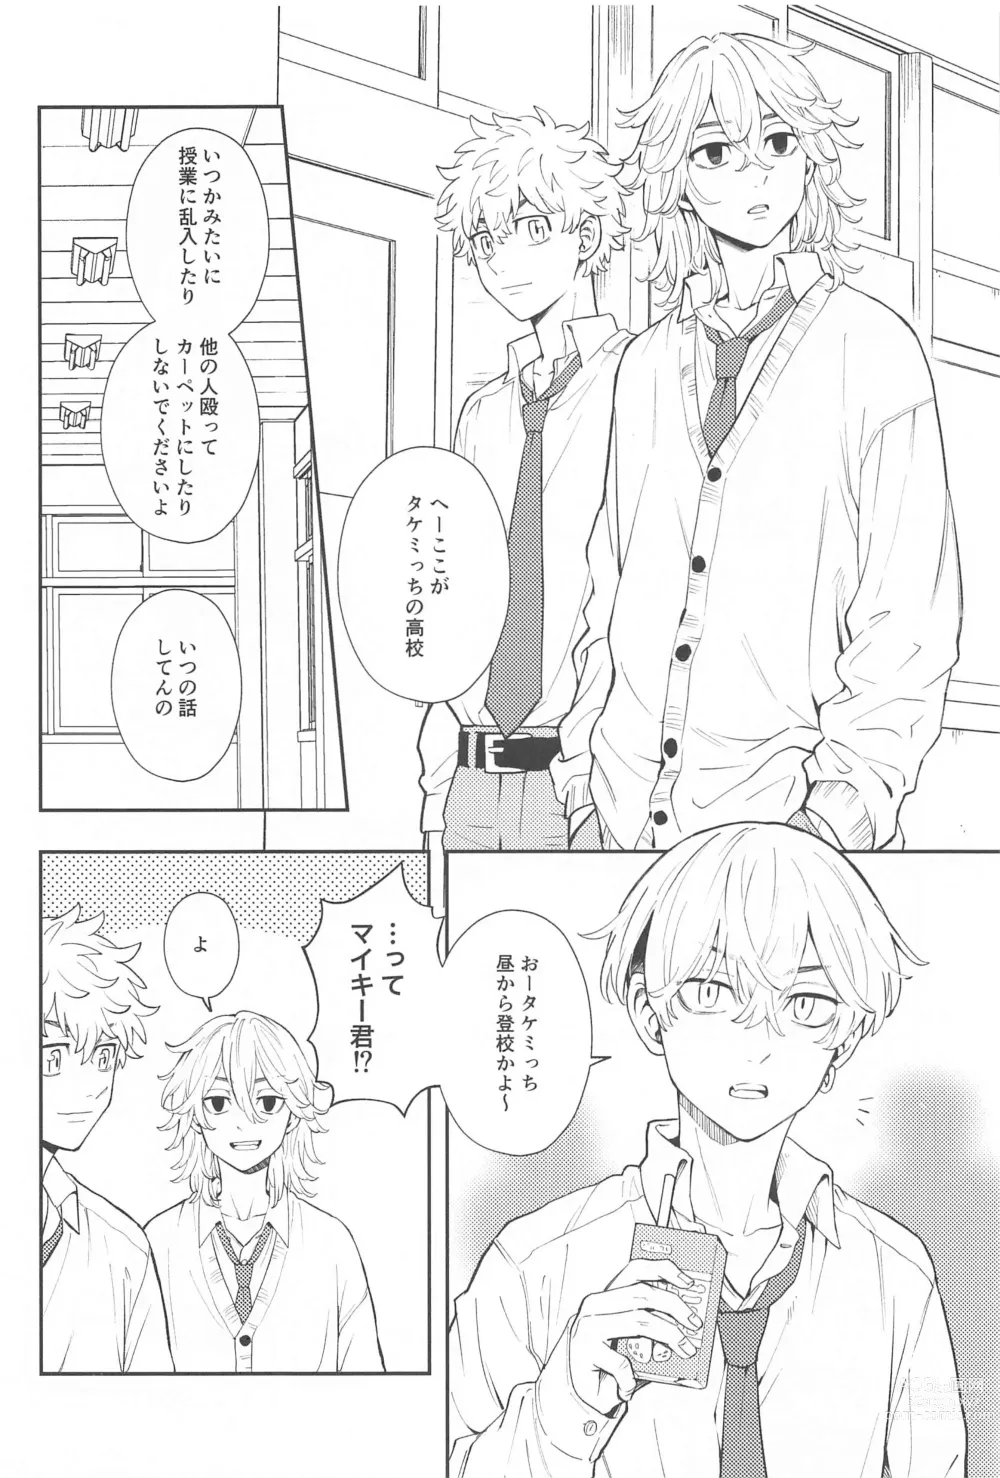 Page 7 of doujinshi Kyou wa Osoroi de!